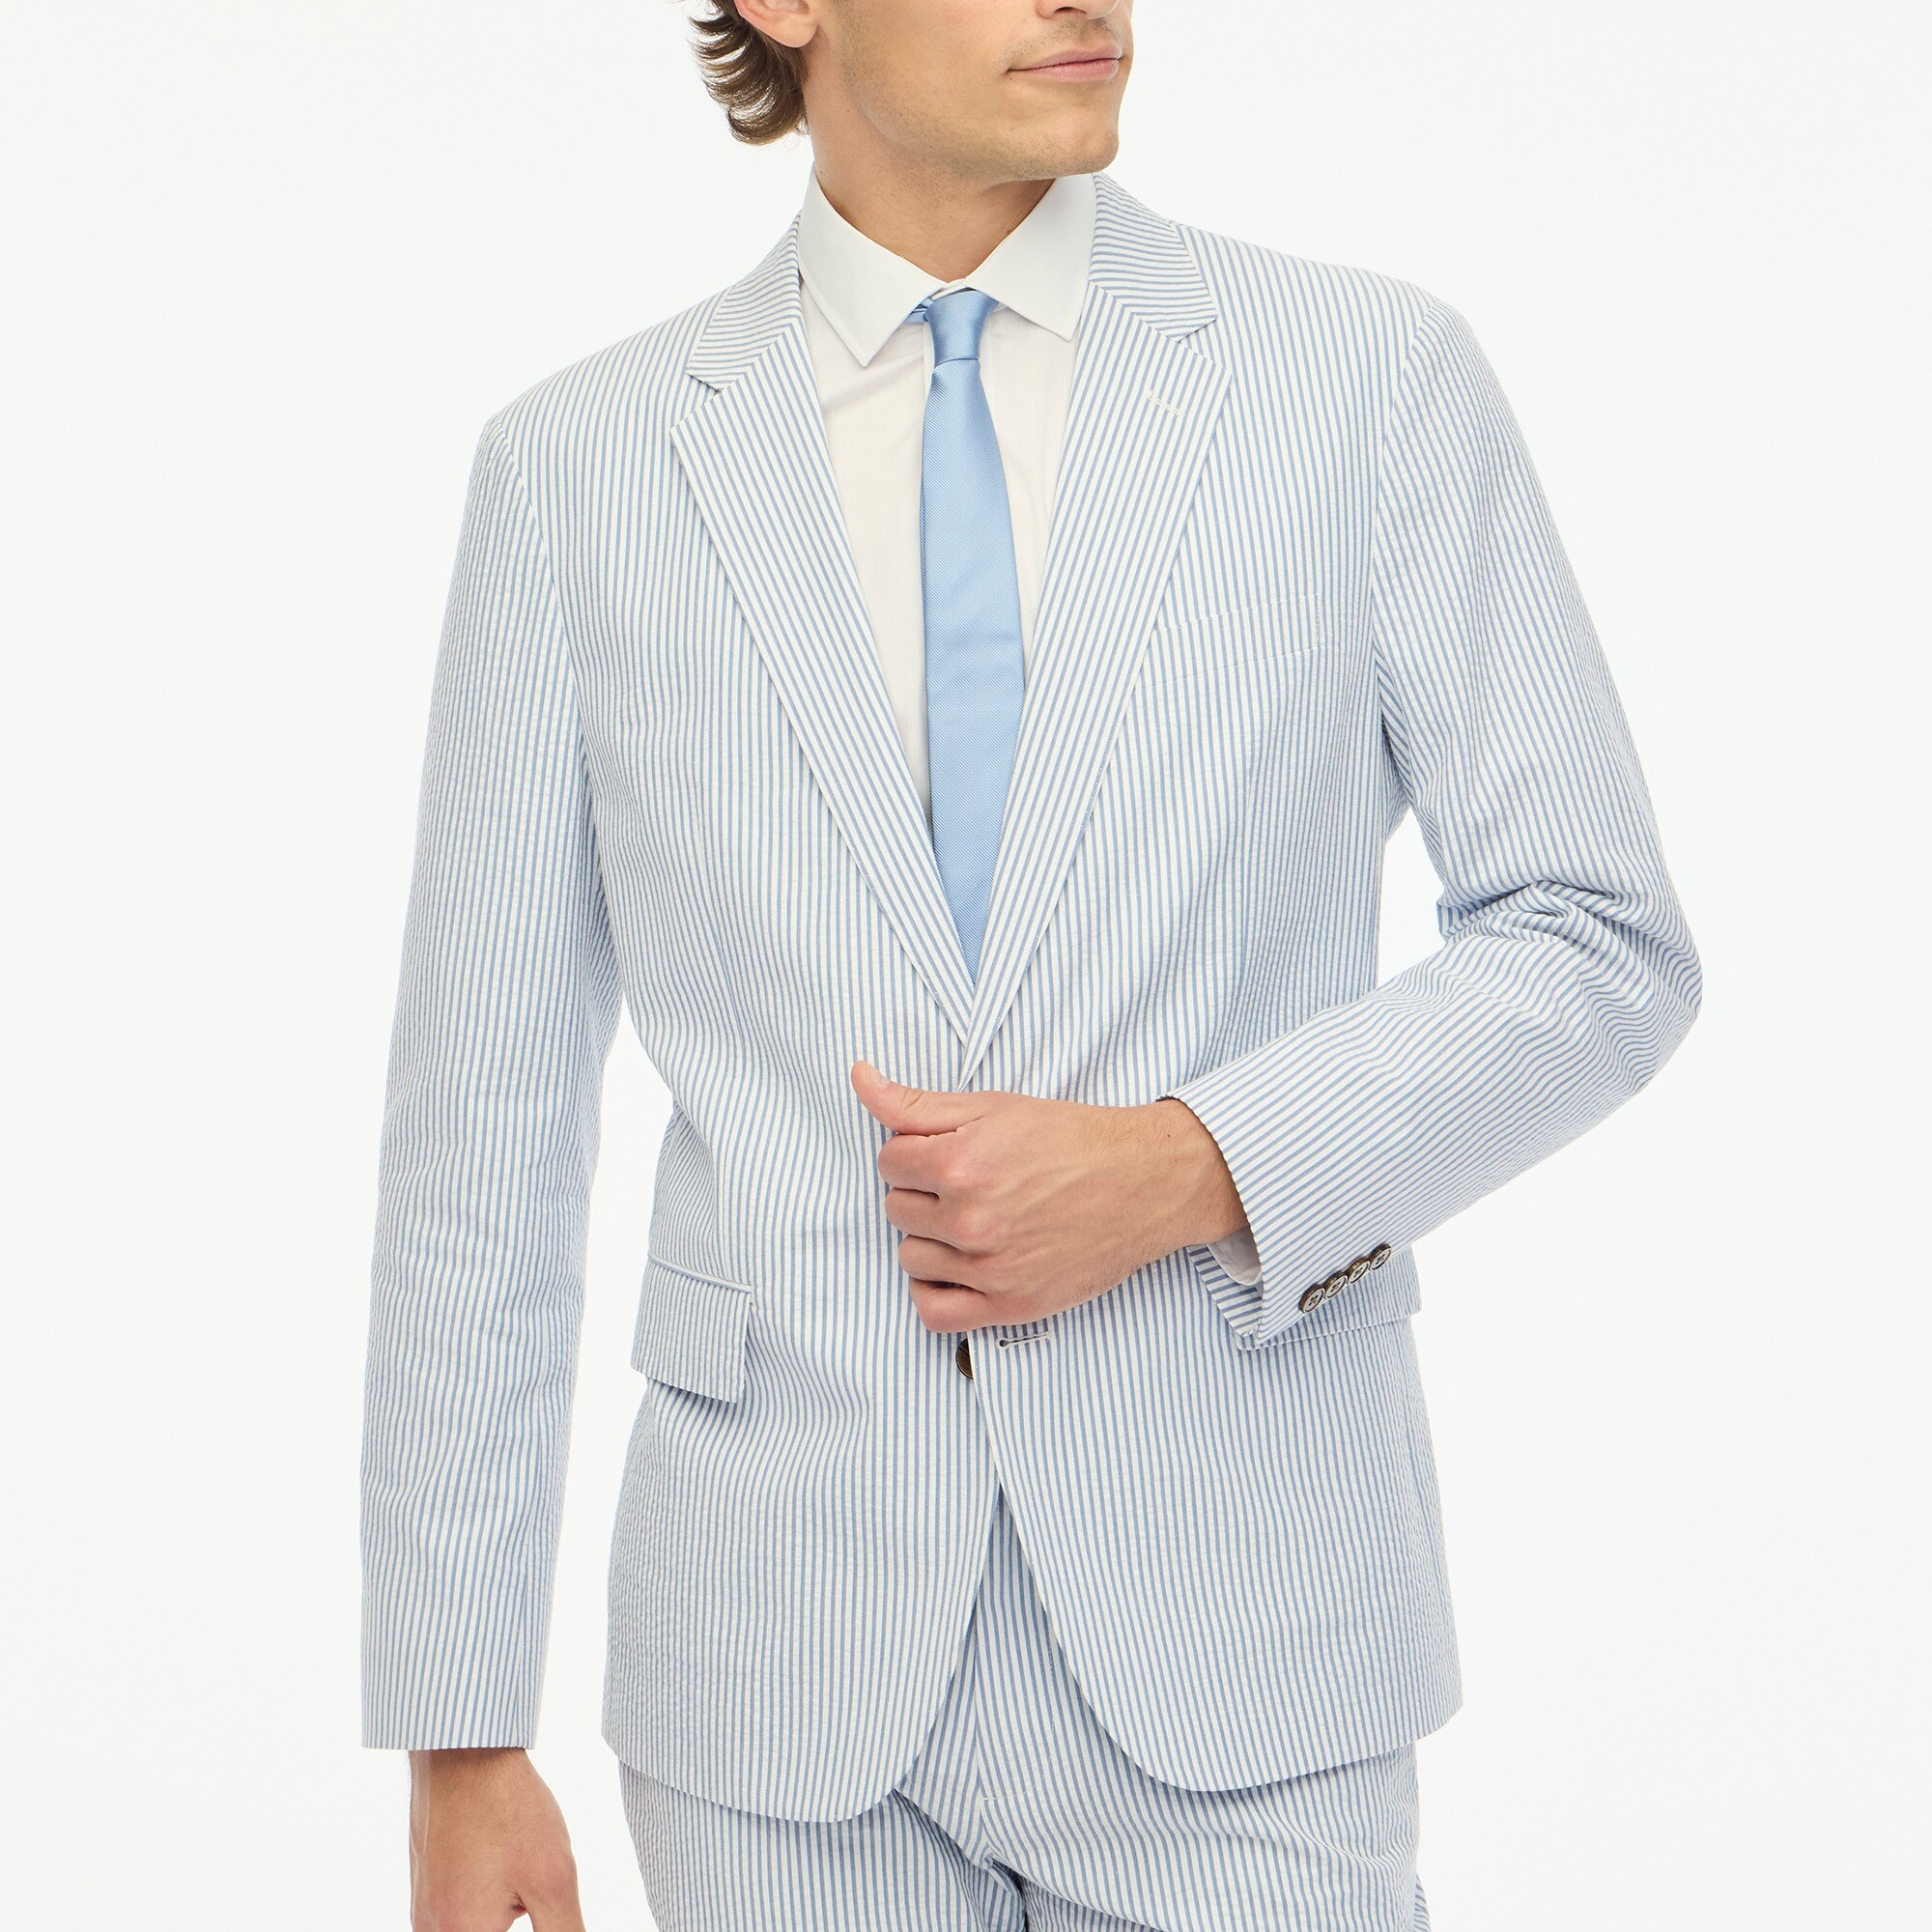  Slim-fit Thompson seersucker suit jacket